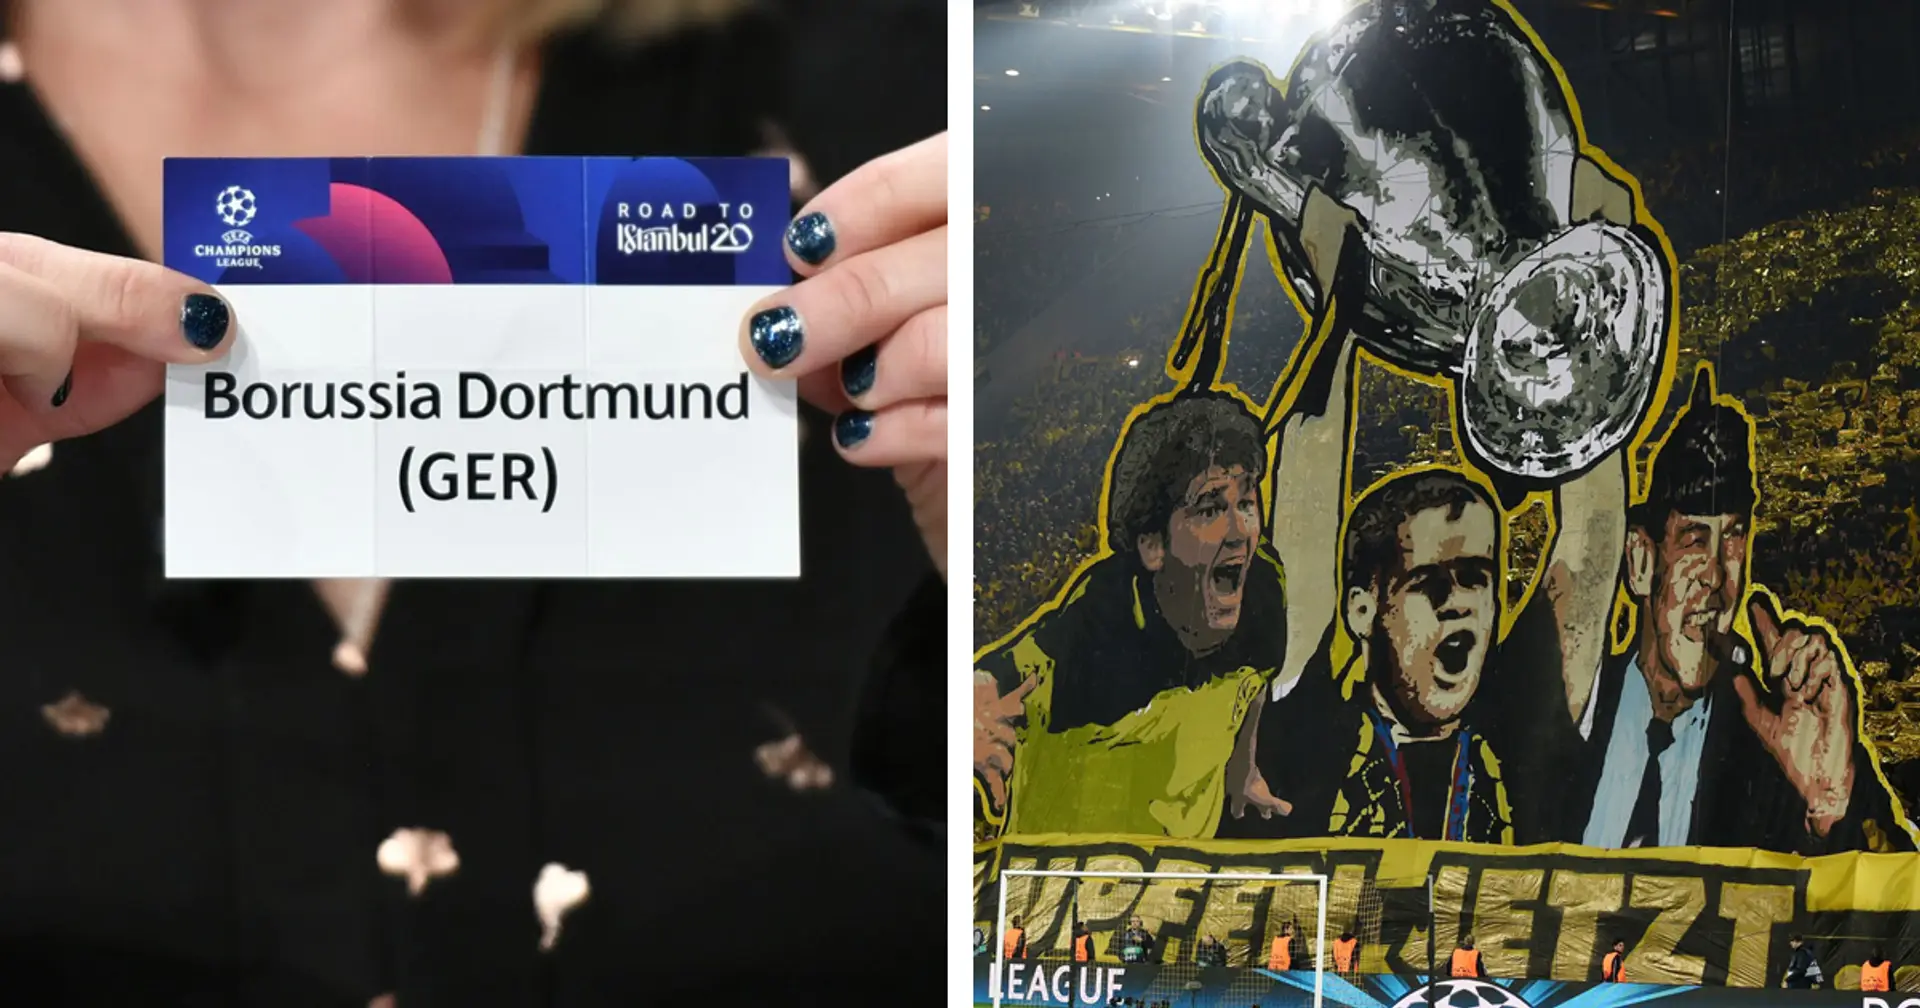 Erklärt: Deshalb geht Dortmund in der nächsten Saison in den Champions League-Lostopf 3